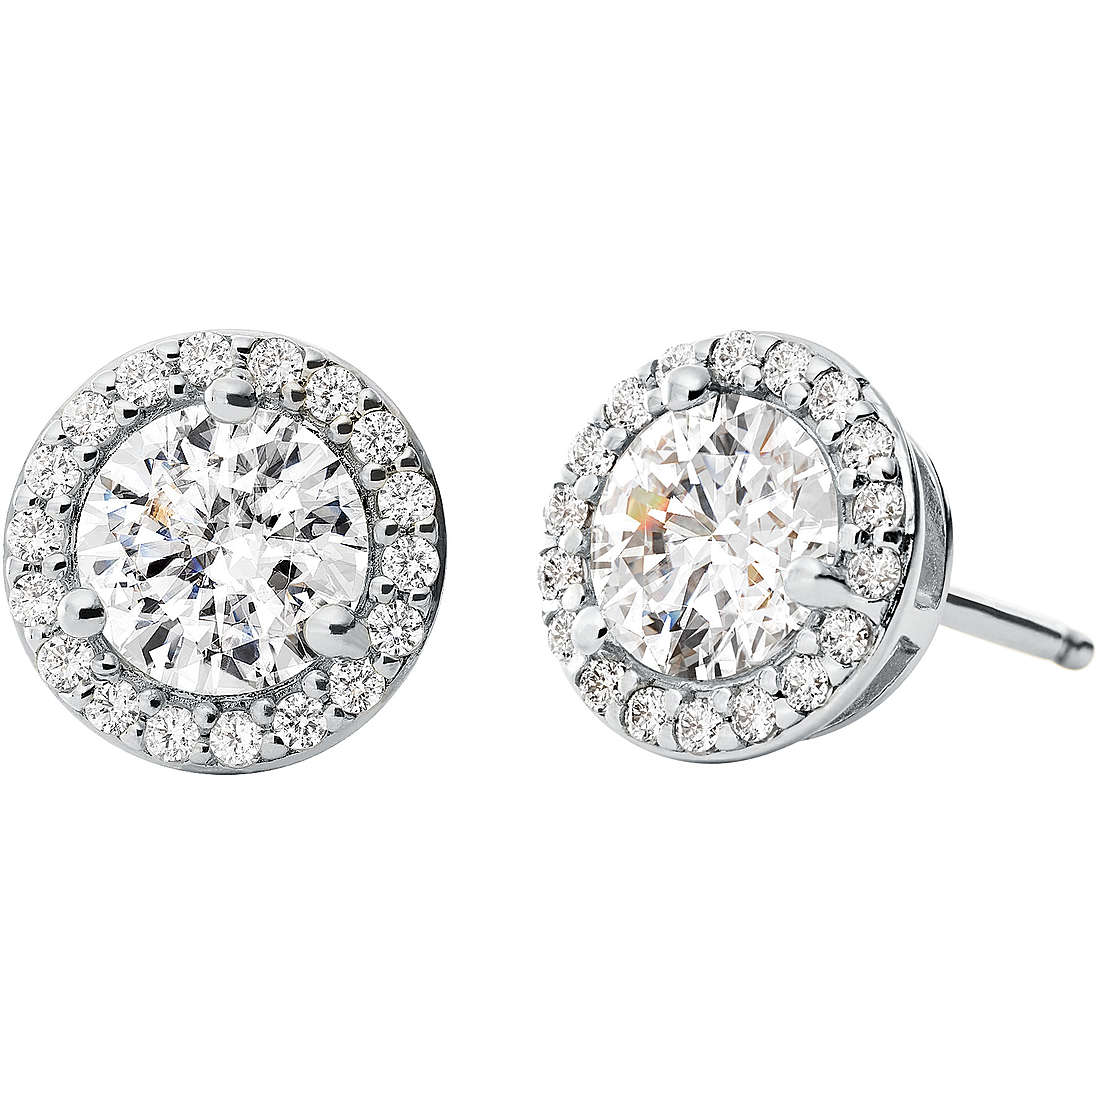 ear-rings woman jewellery Michael Kors Stud Earrings MKC1035AN040